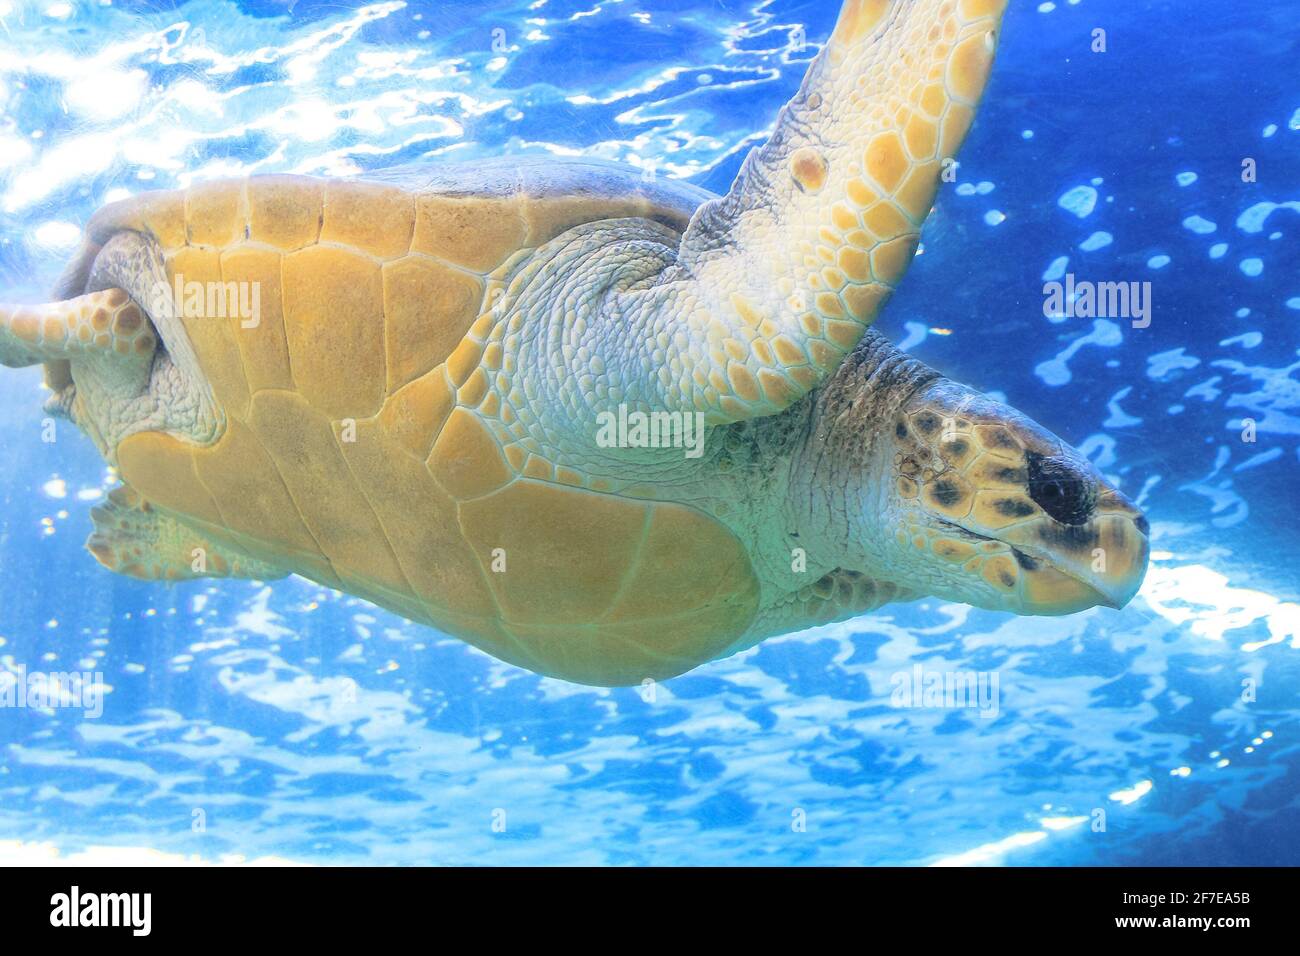 Cerca de una tortuga verde en el mar azul. Chelonia mydas especies que viven en mares tropicales y subtropicales alrededor del mundo. Familia Cheloniidae Foto de stock